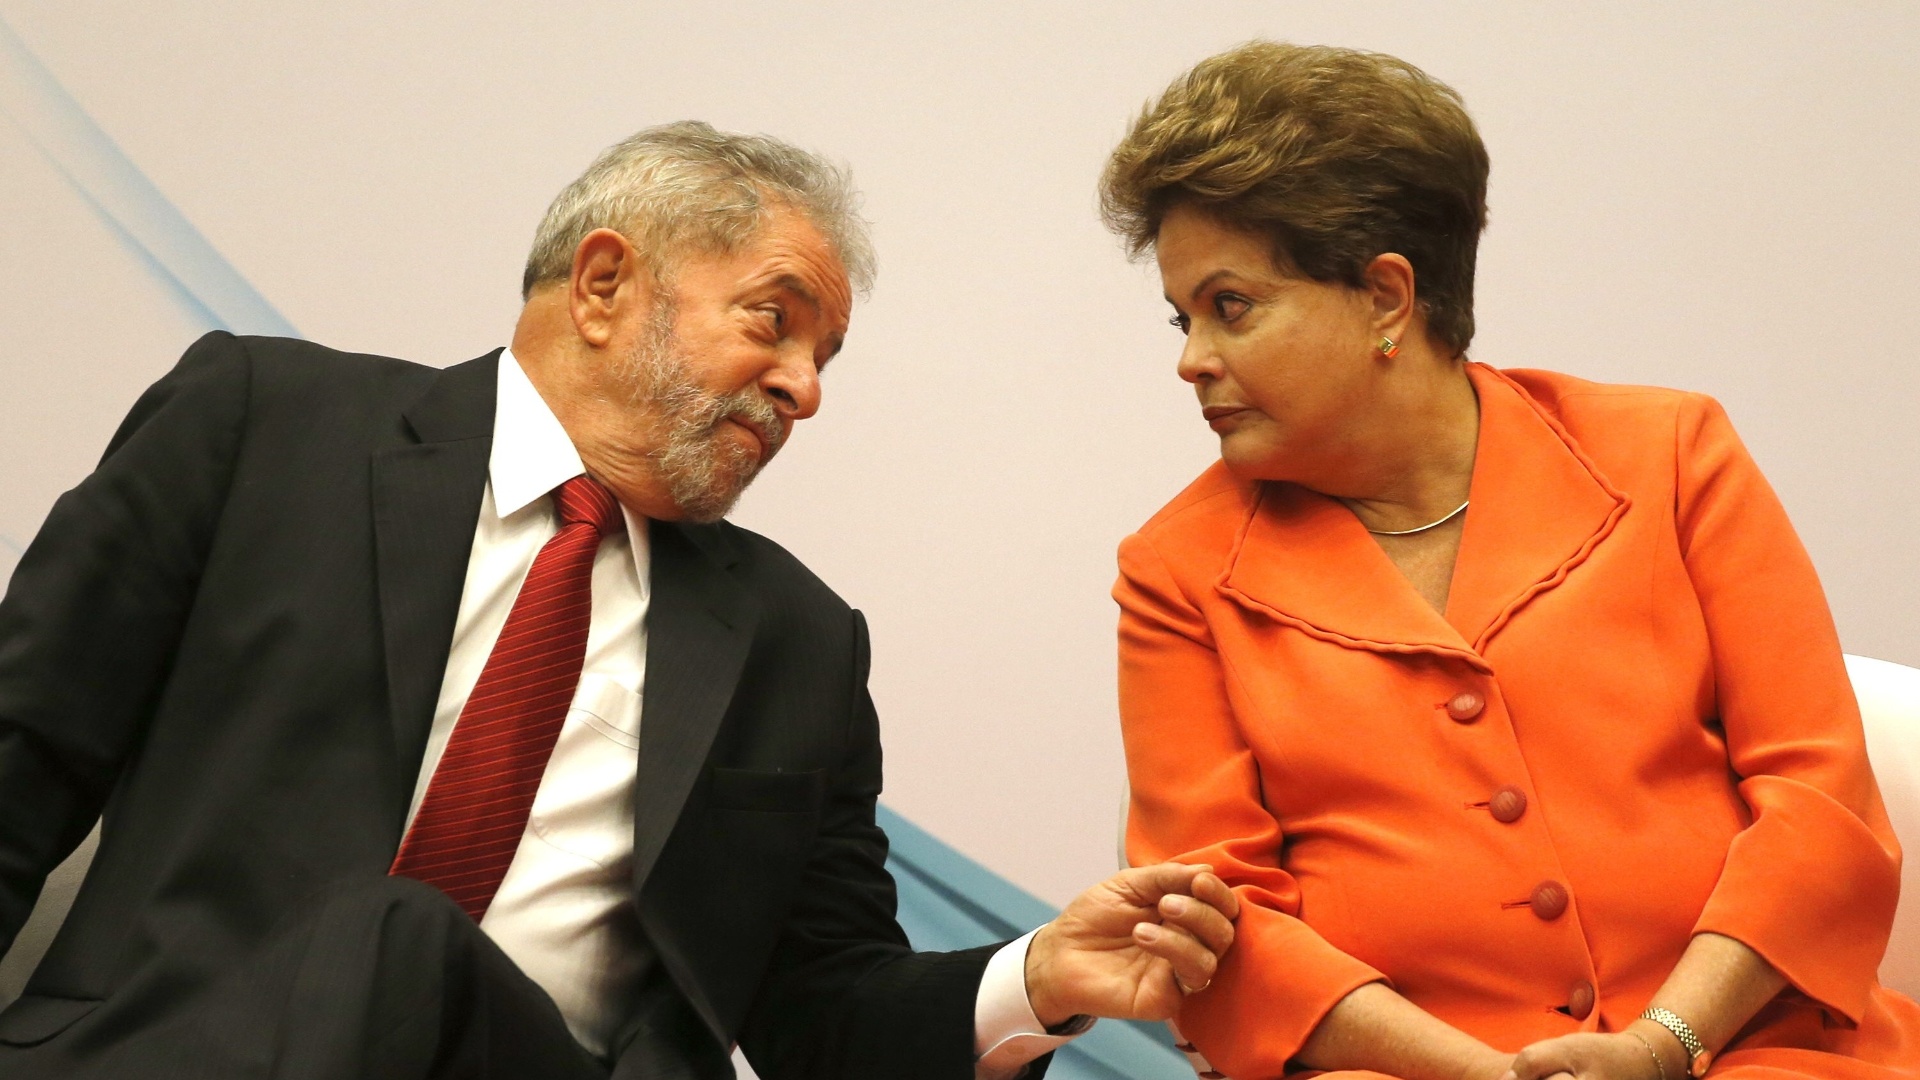 Na entrevista, Lula disse que o governo de Dilma Rousseff tomou decisões erradas em relação ao ajuste econômico, mas que está seguro em um futuro mais promissor nos próximos anos.